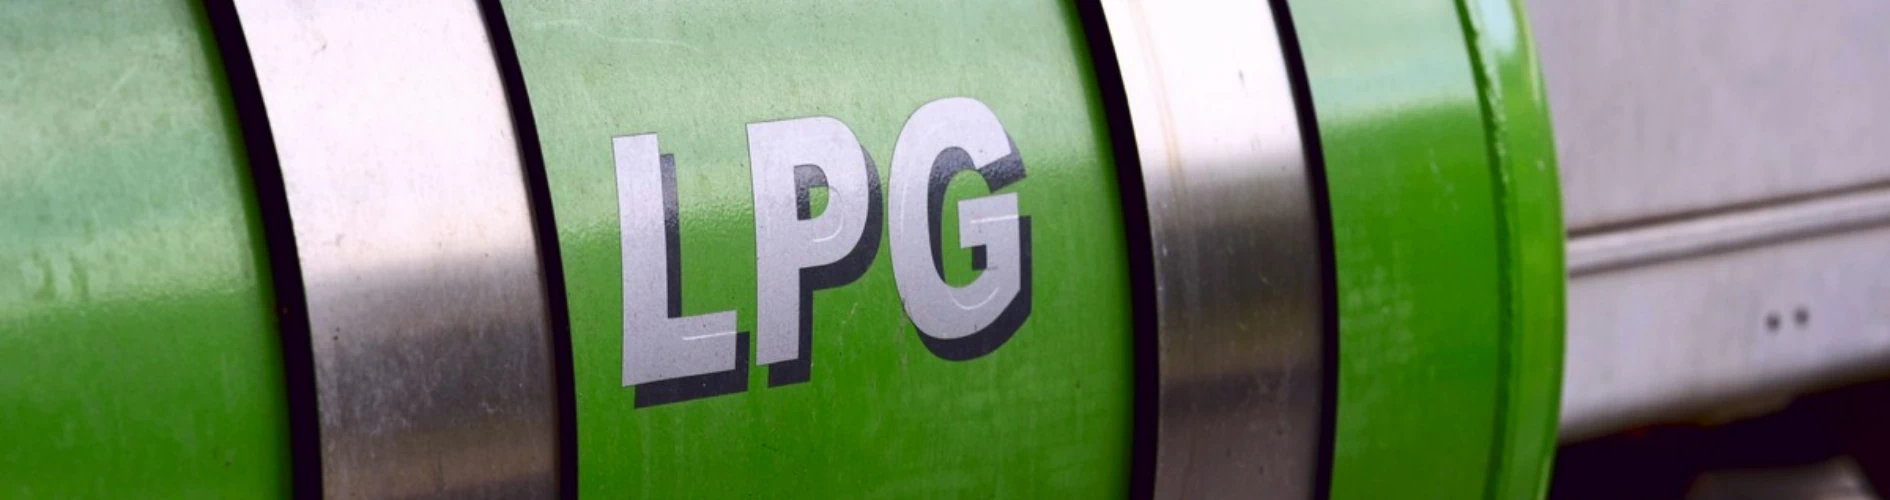 zielona butla LPG